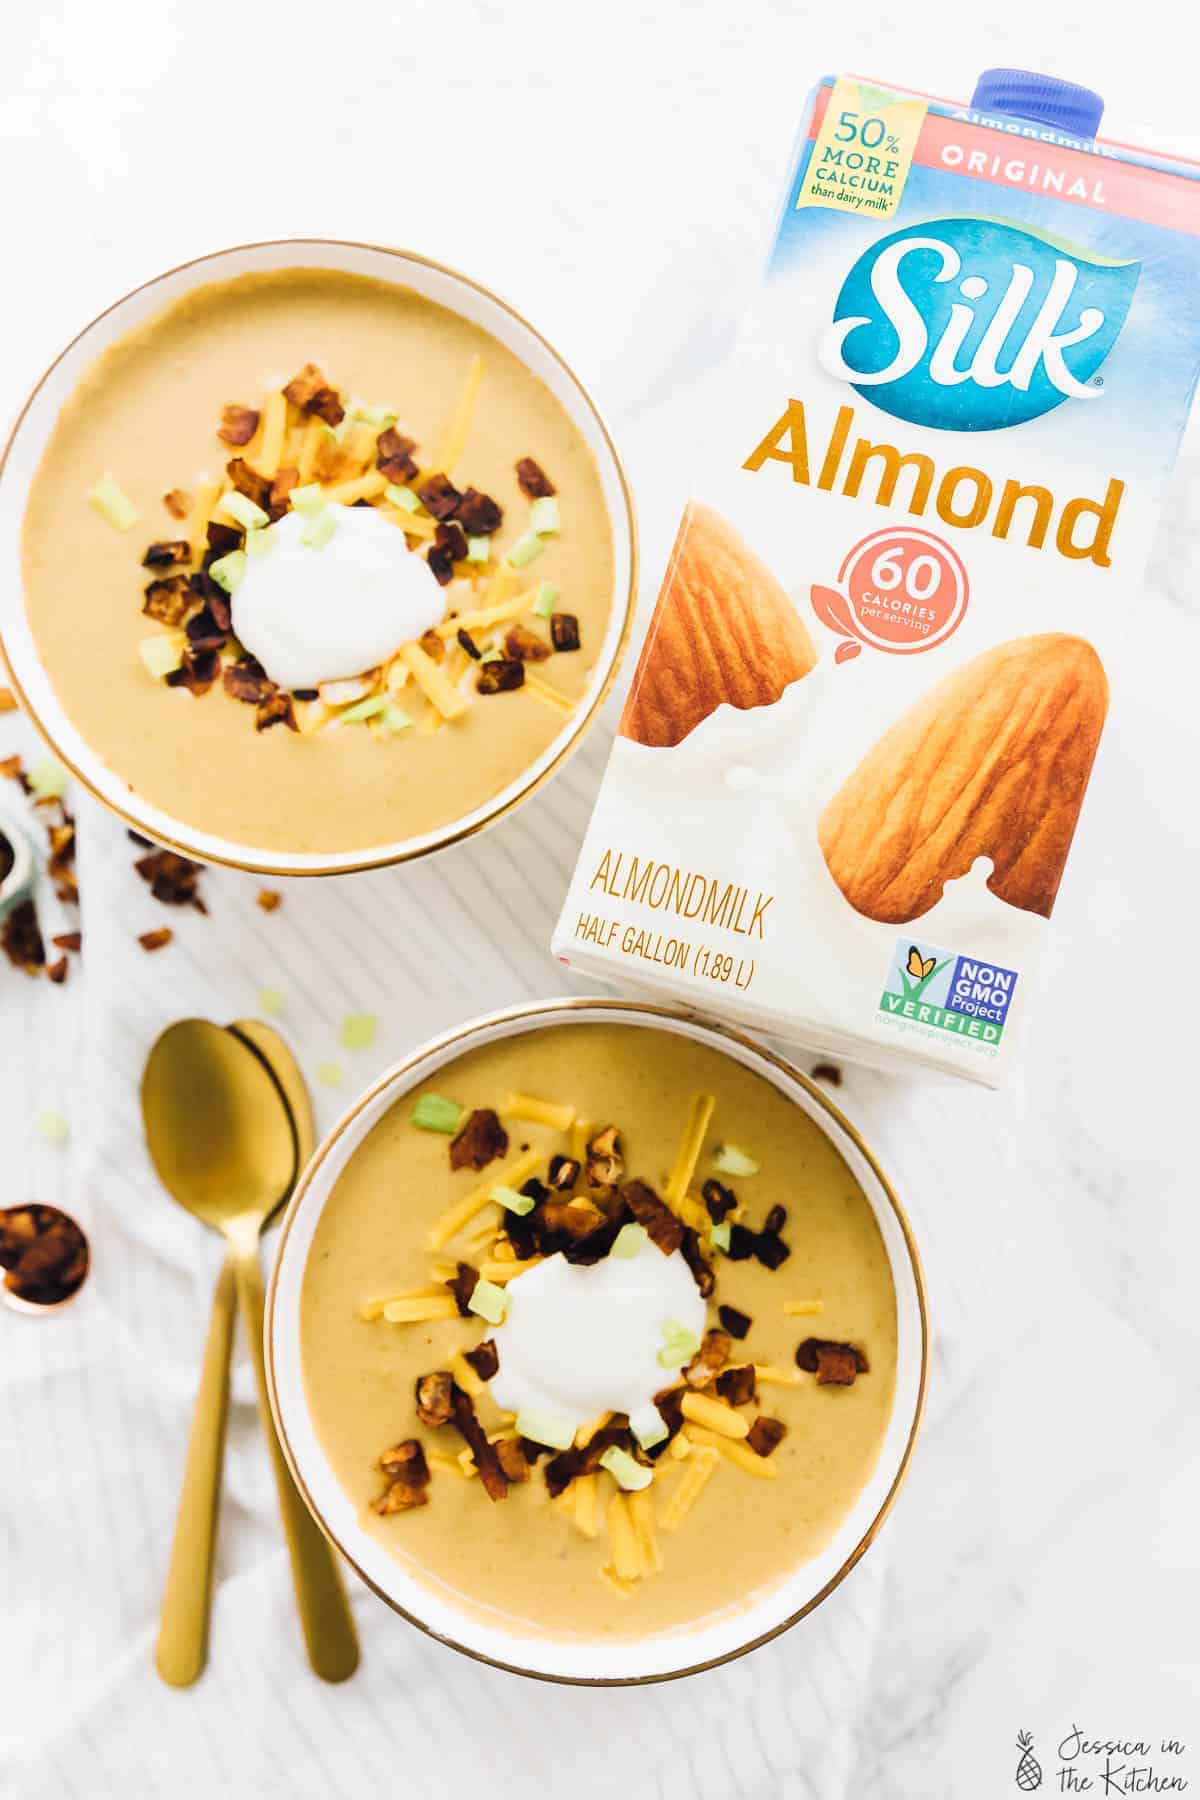 Vegan potato soup birds eye view with a carton of Silk Almond milk.